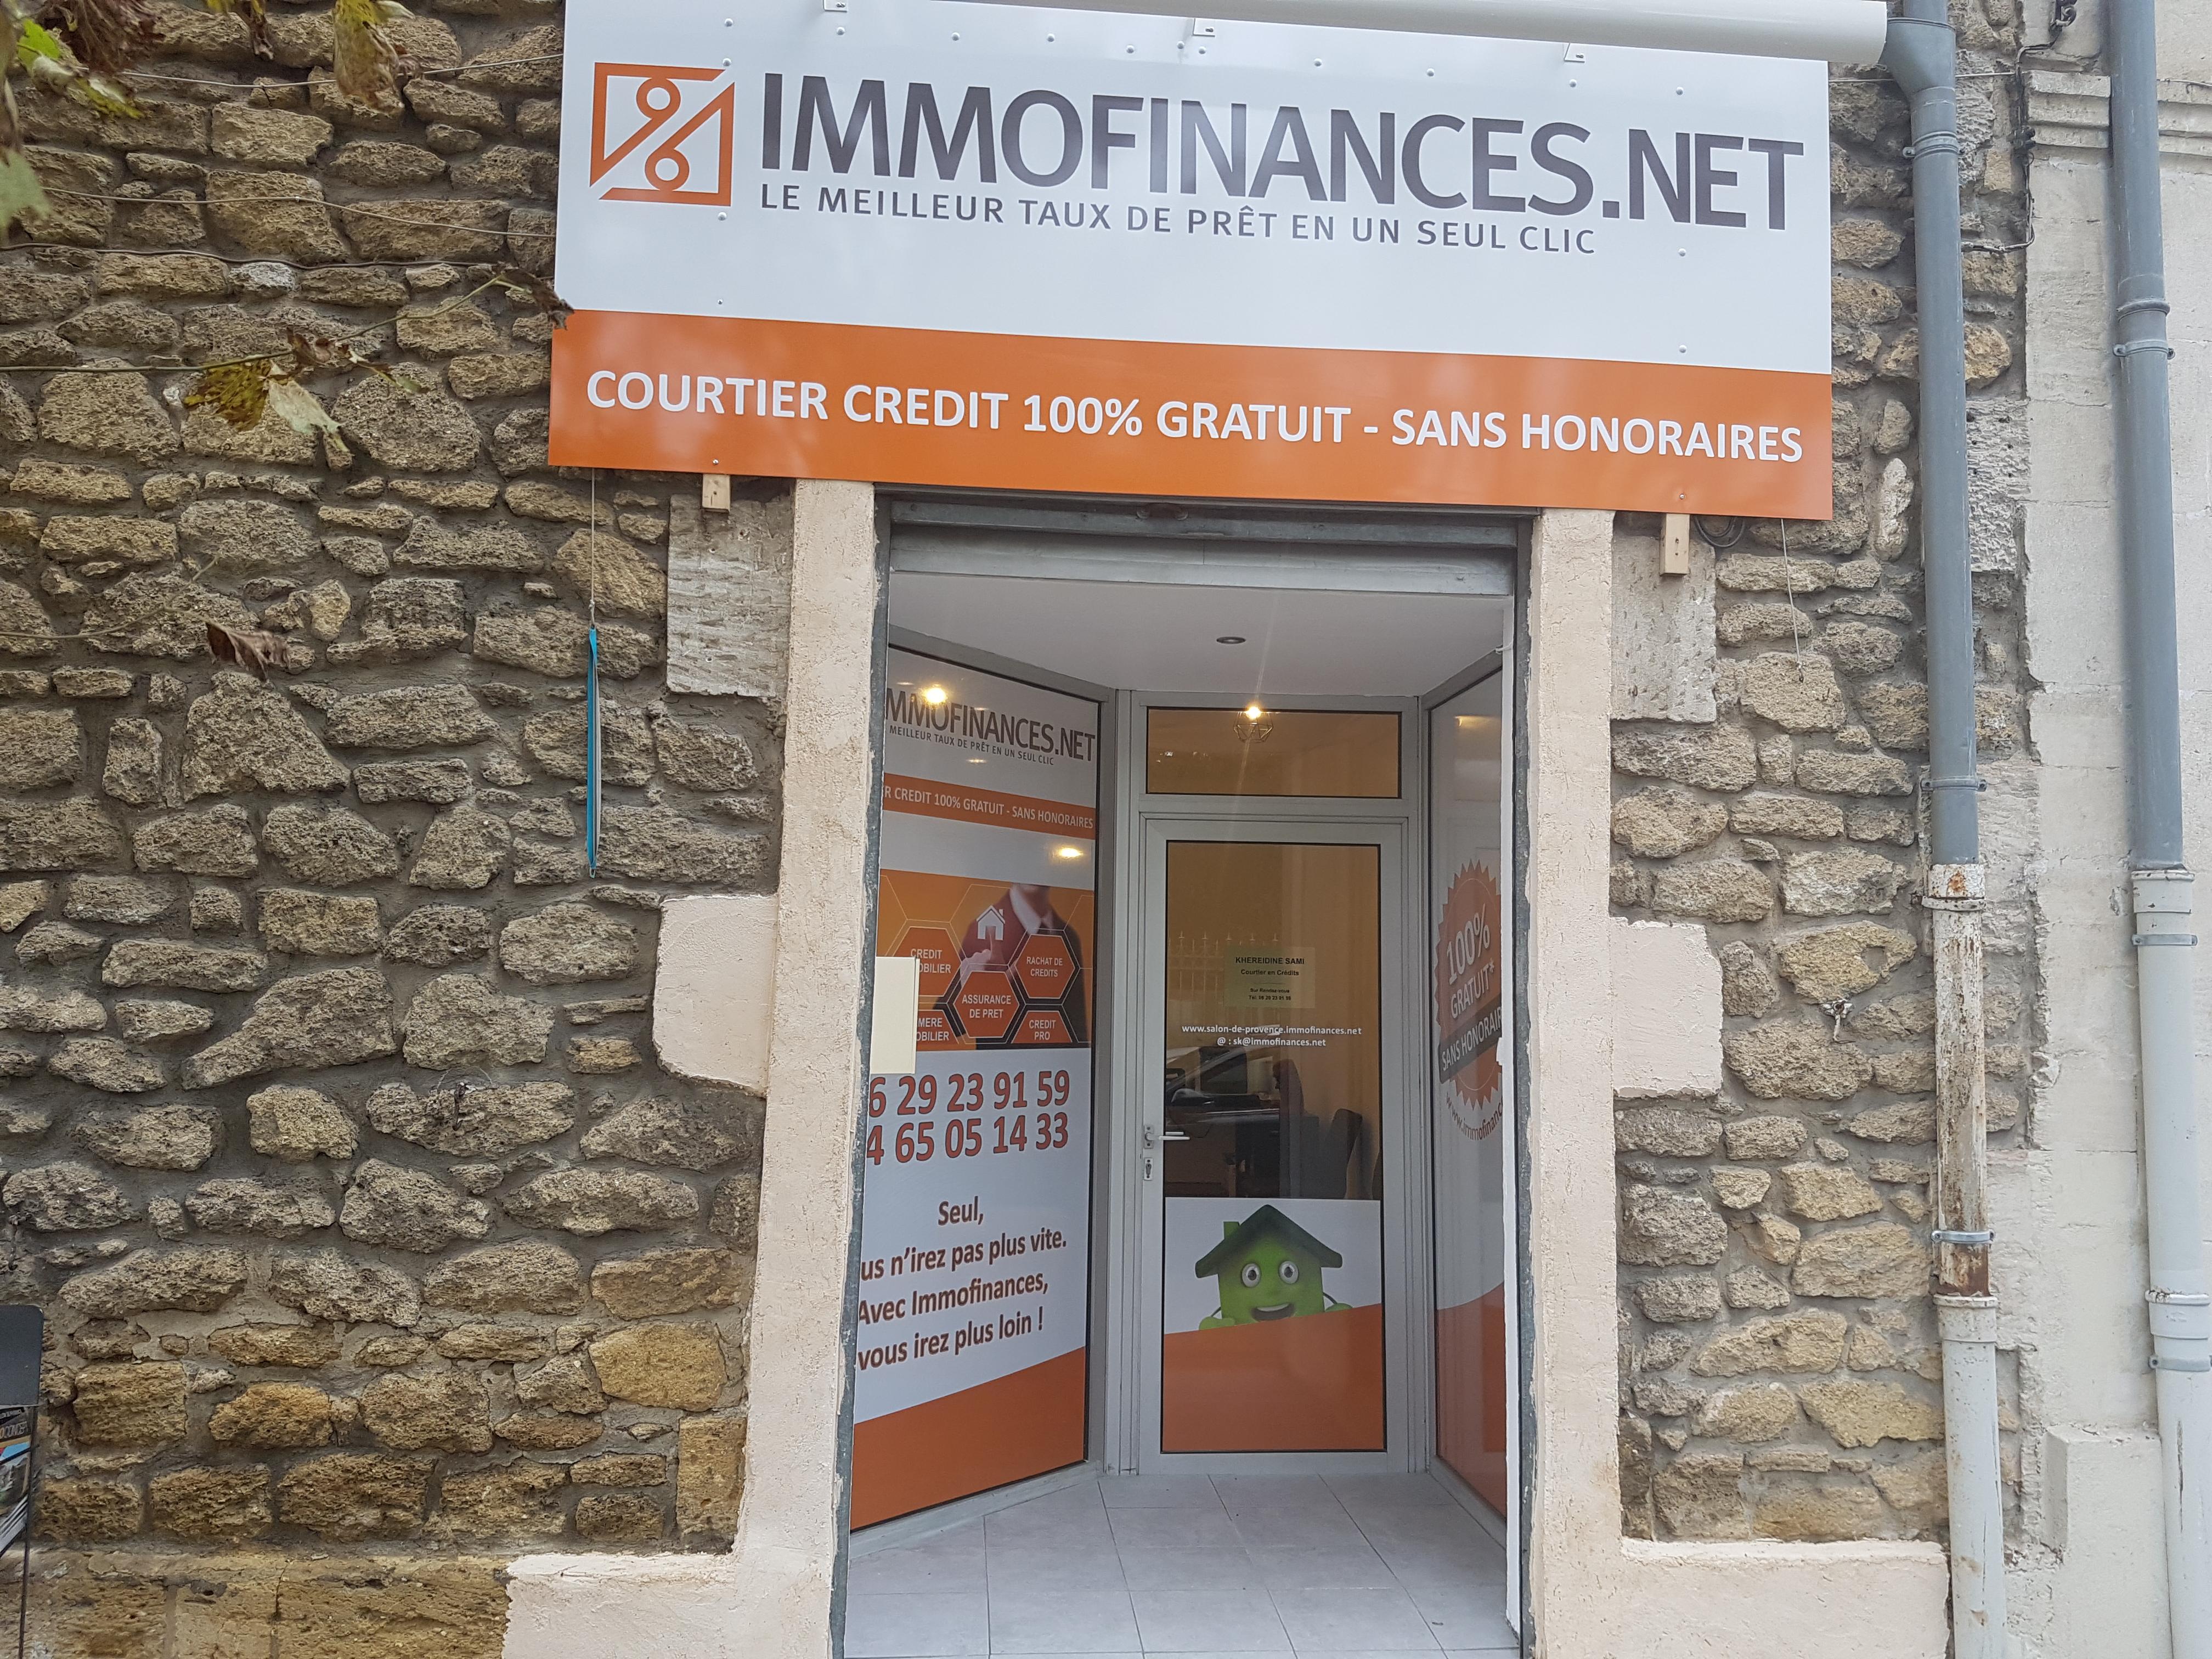 immofinances.net-SALON DE PROVENCE-13-courtier-pret-immobilier-assurance-credit